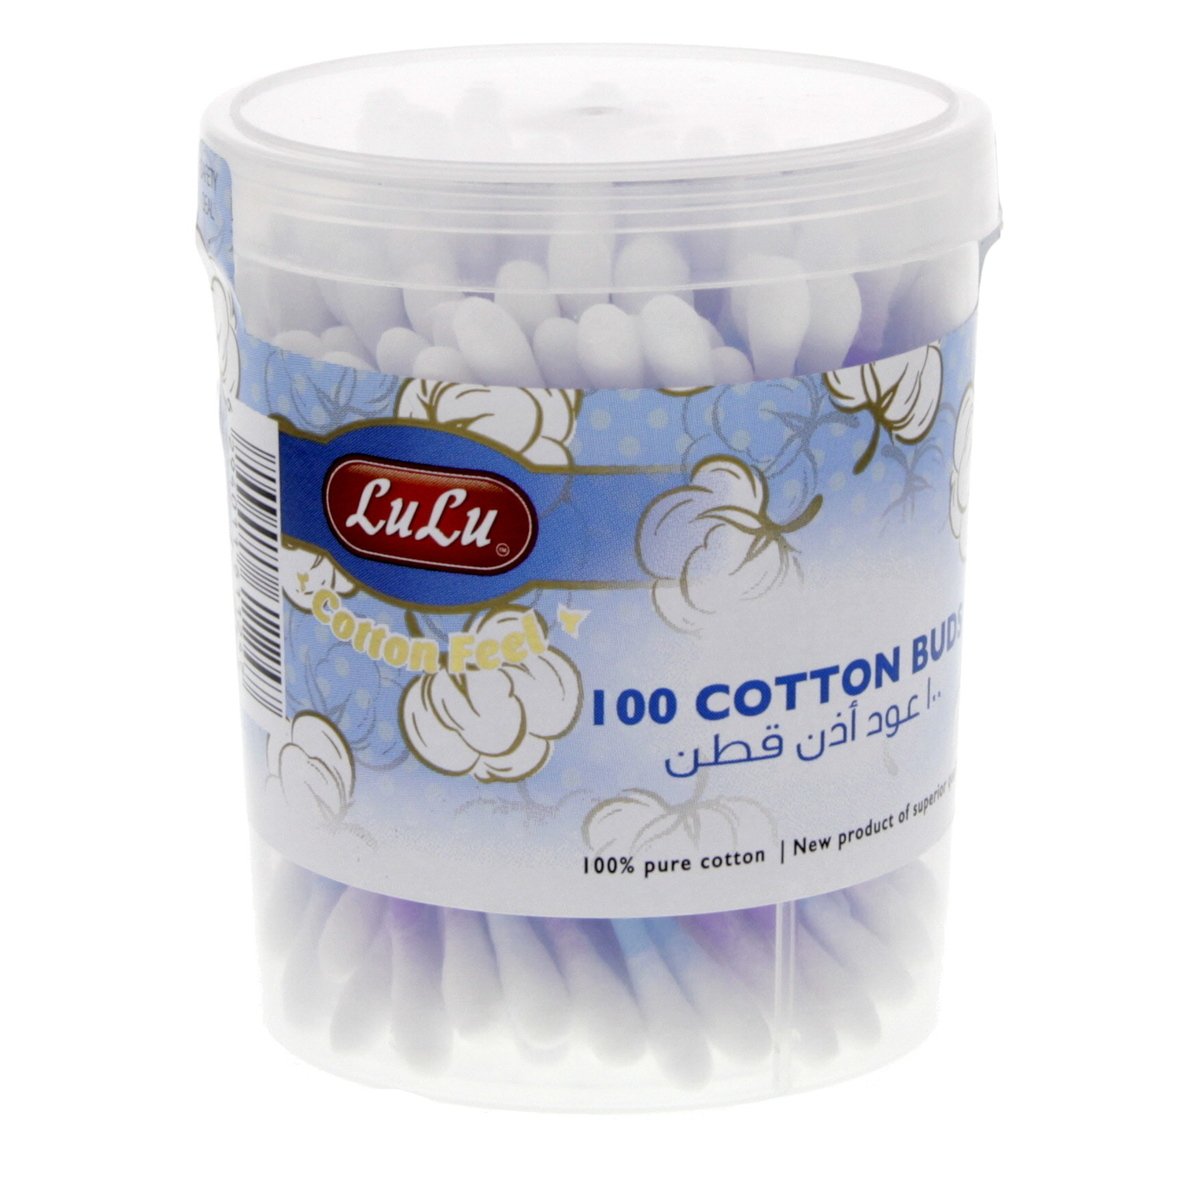 LuLu Cotton Buds 100 pcs